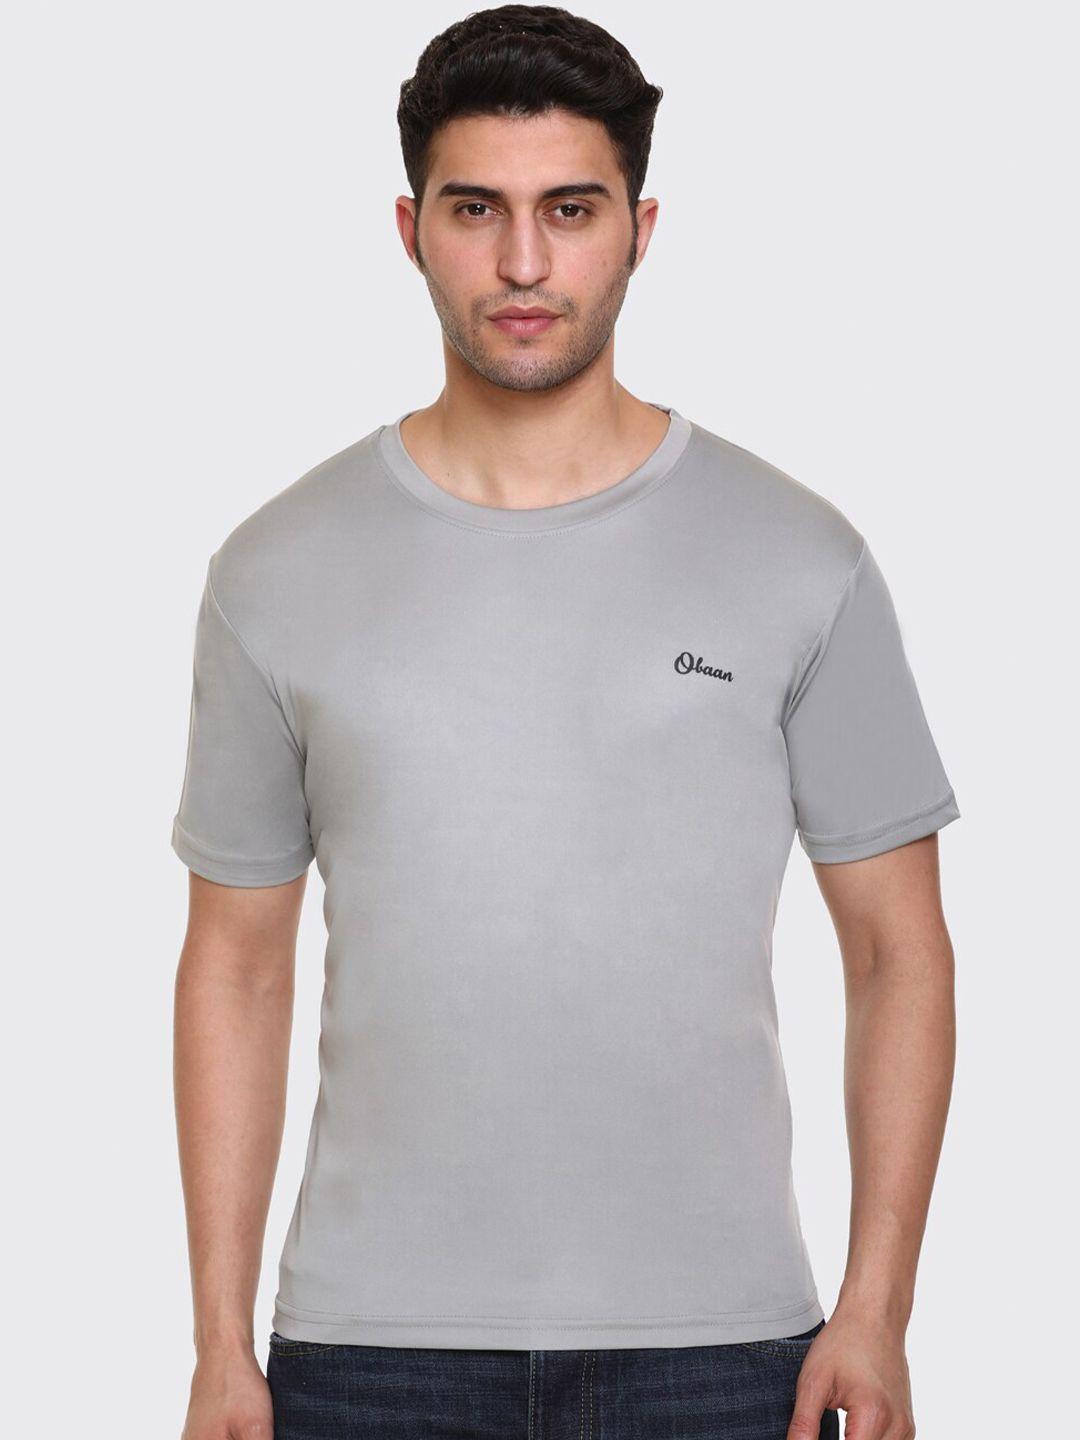 obaan men grey t-shirt